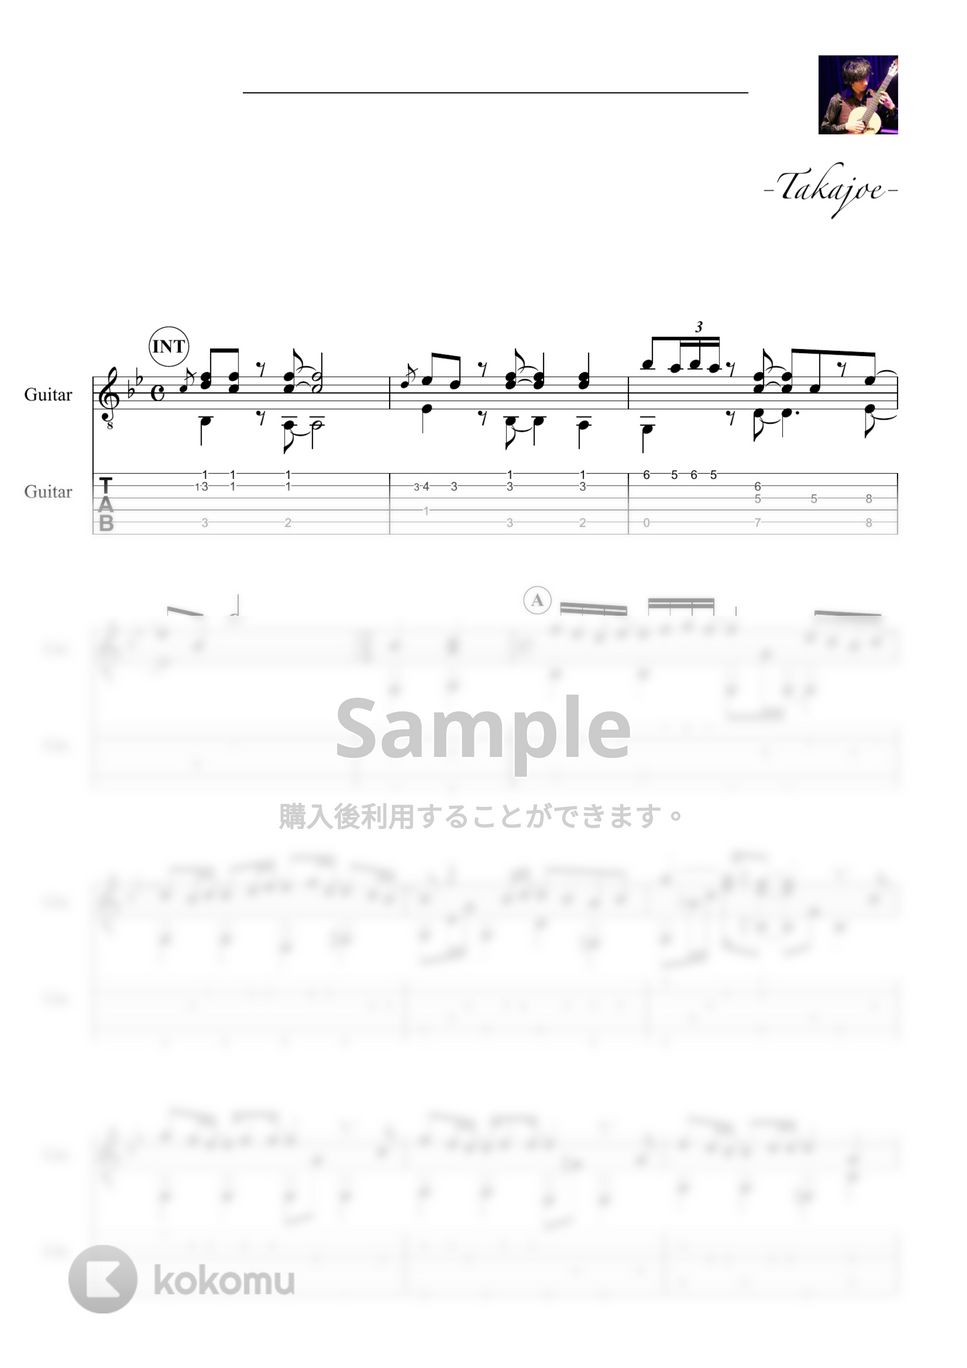 秦 基博 - ひまわりの約束 (『STAND BY ME ドラえもん』 Short Ver.) by 鷹城-Takajoe-